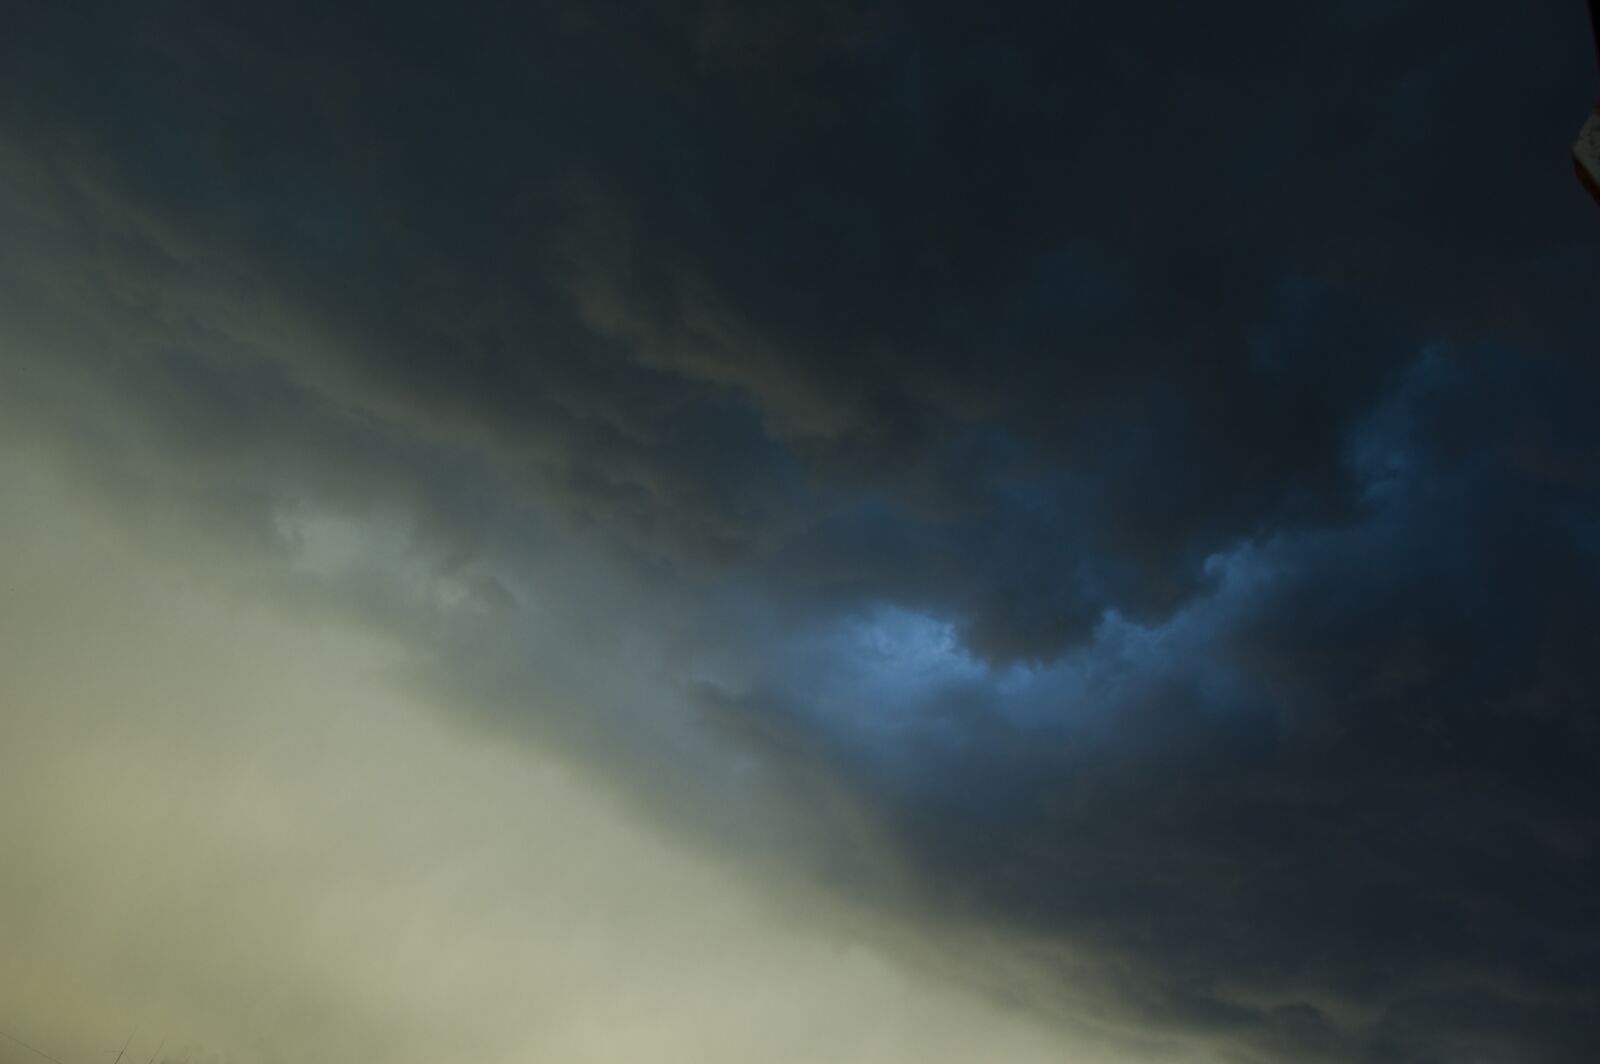 Nikon D70 sample photo. Cloud, nature, storm photography